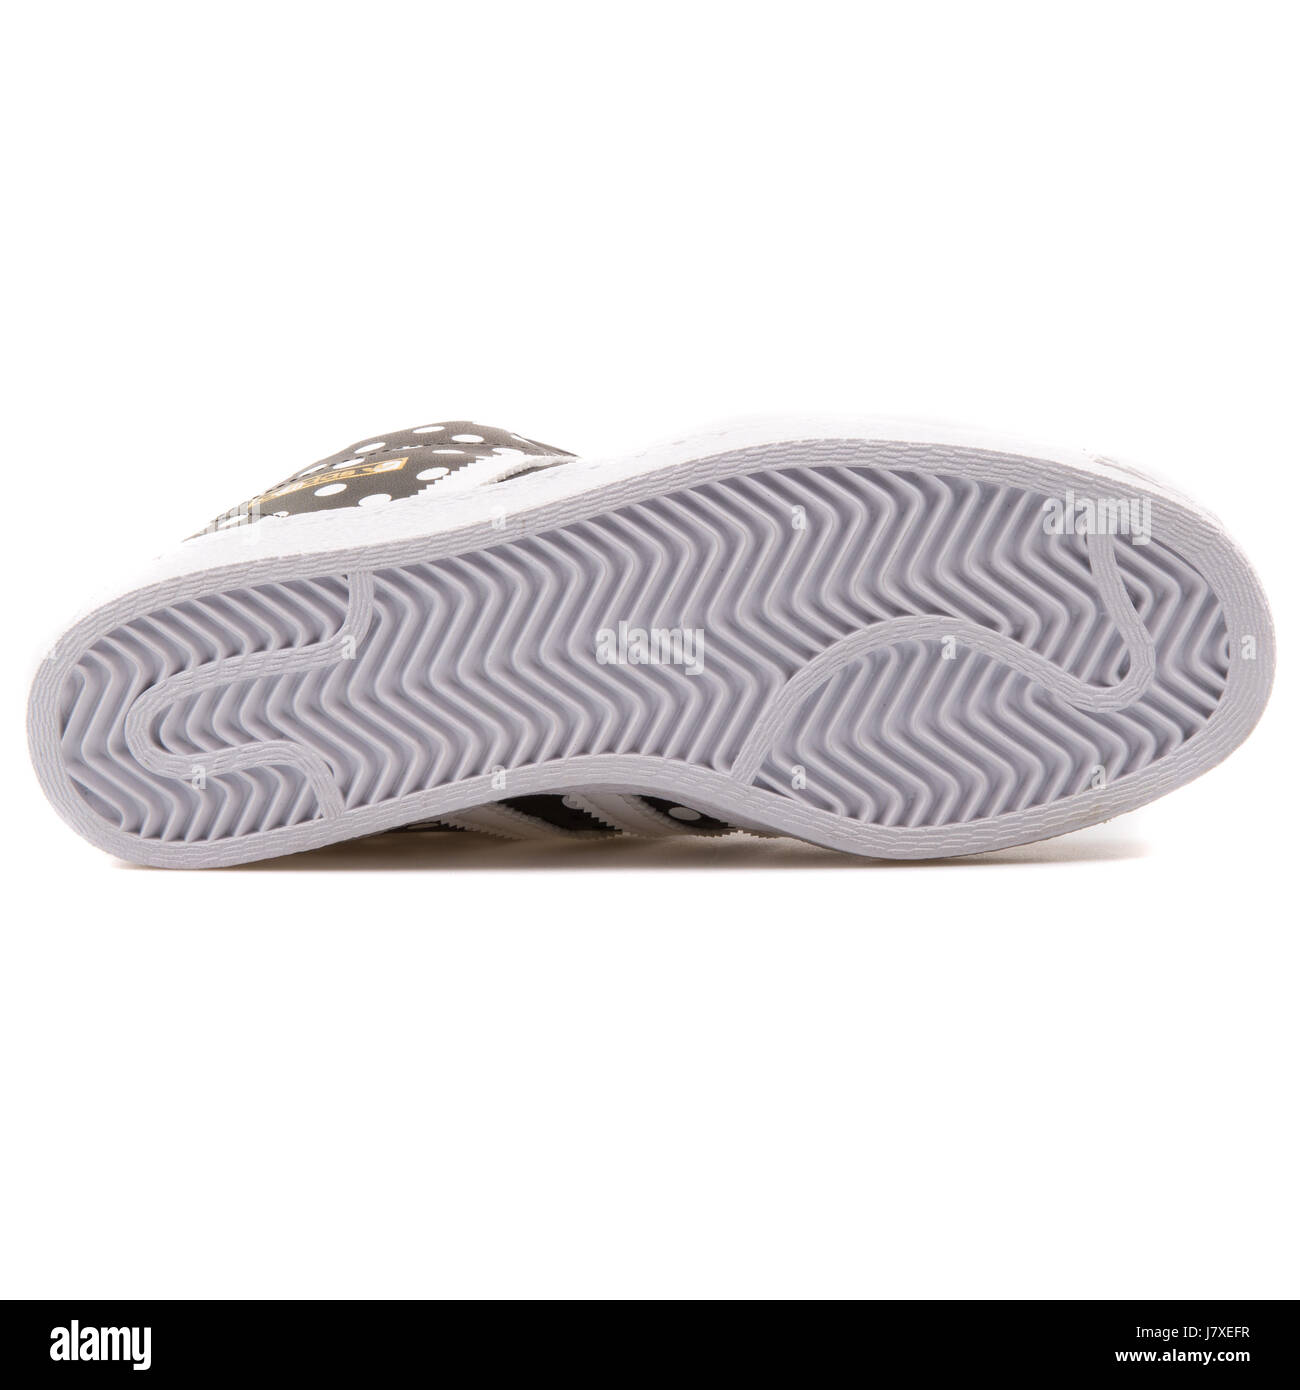 Adidas Superstar W Frauen schwarz mit weißen Punkten Sneakers - S81377  Stockfotografie - Alamy